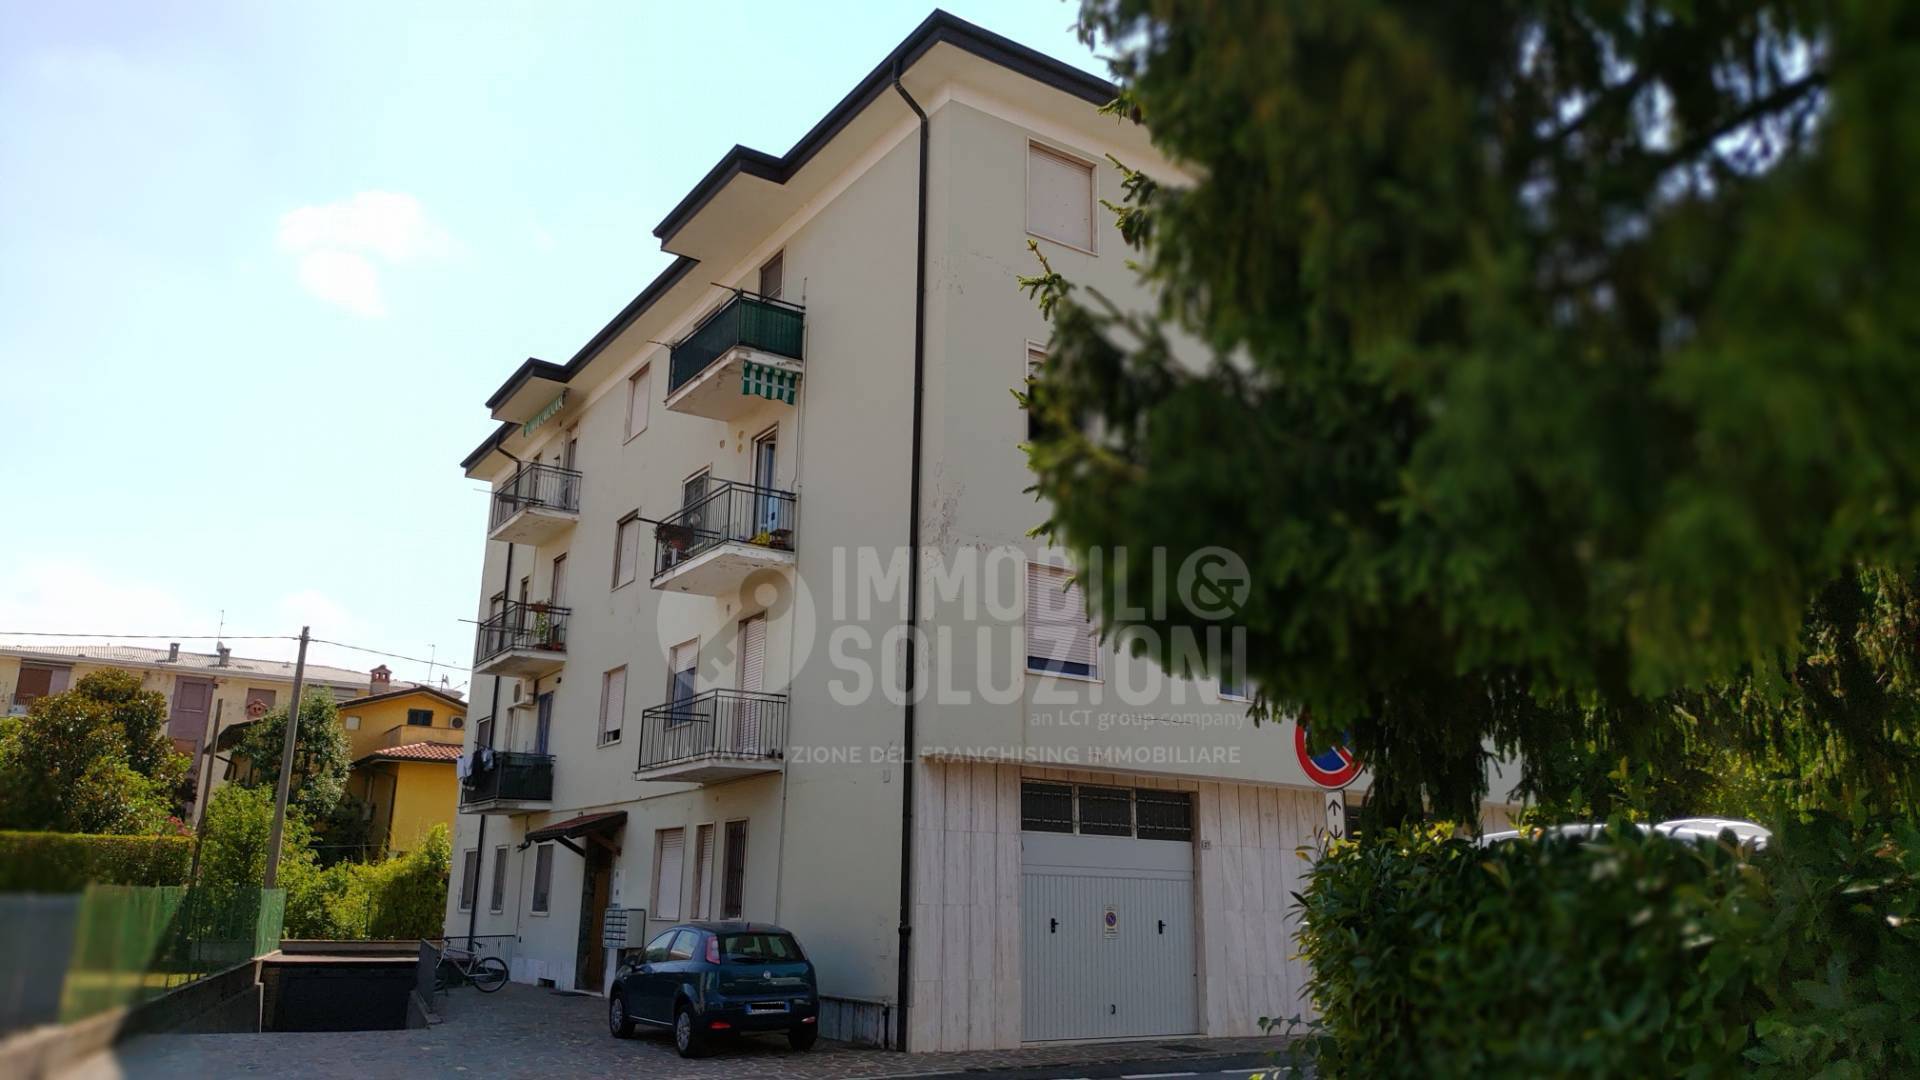 Appartamento in vendita a Verdello, 3 locali, prezzo € 64.000 | CambioCasa.it